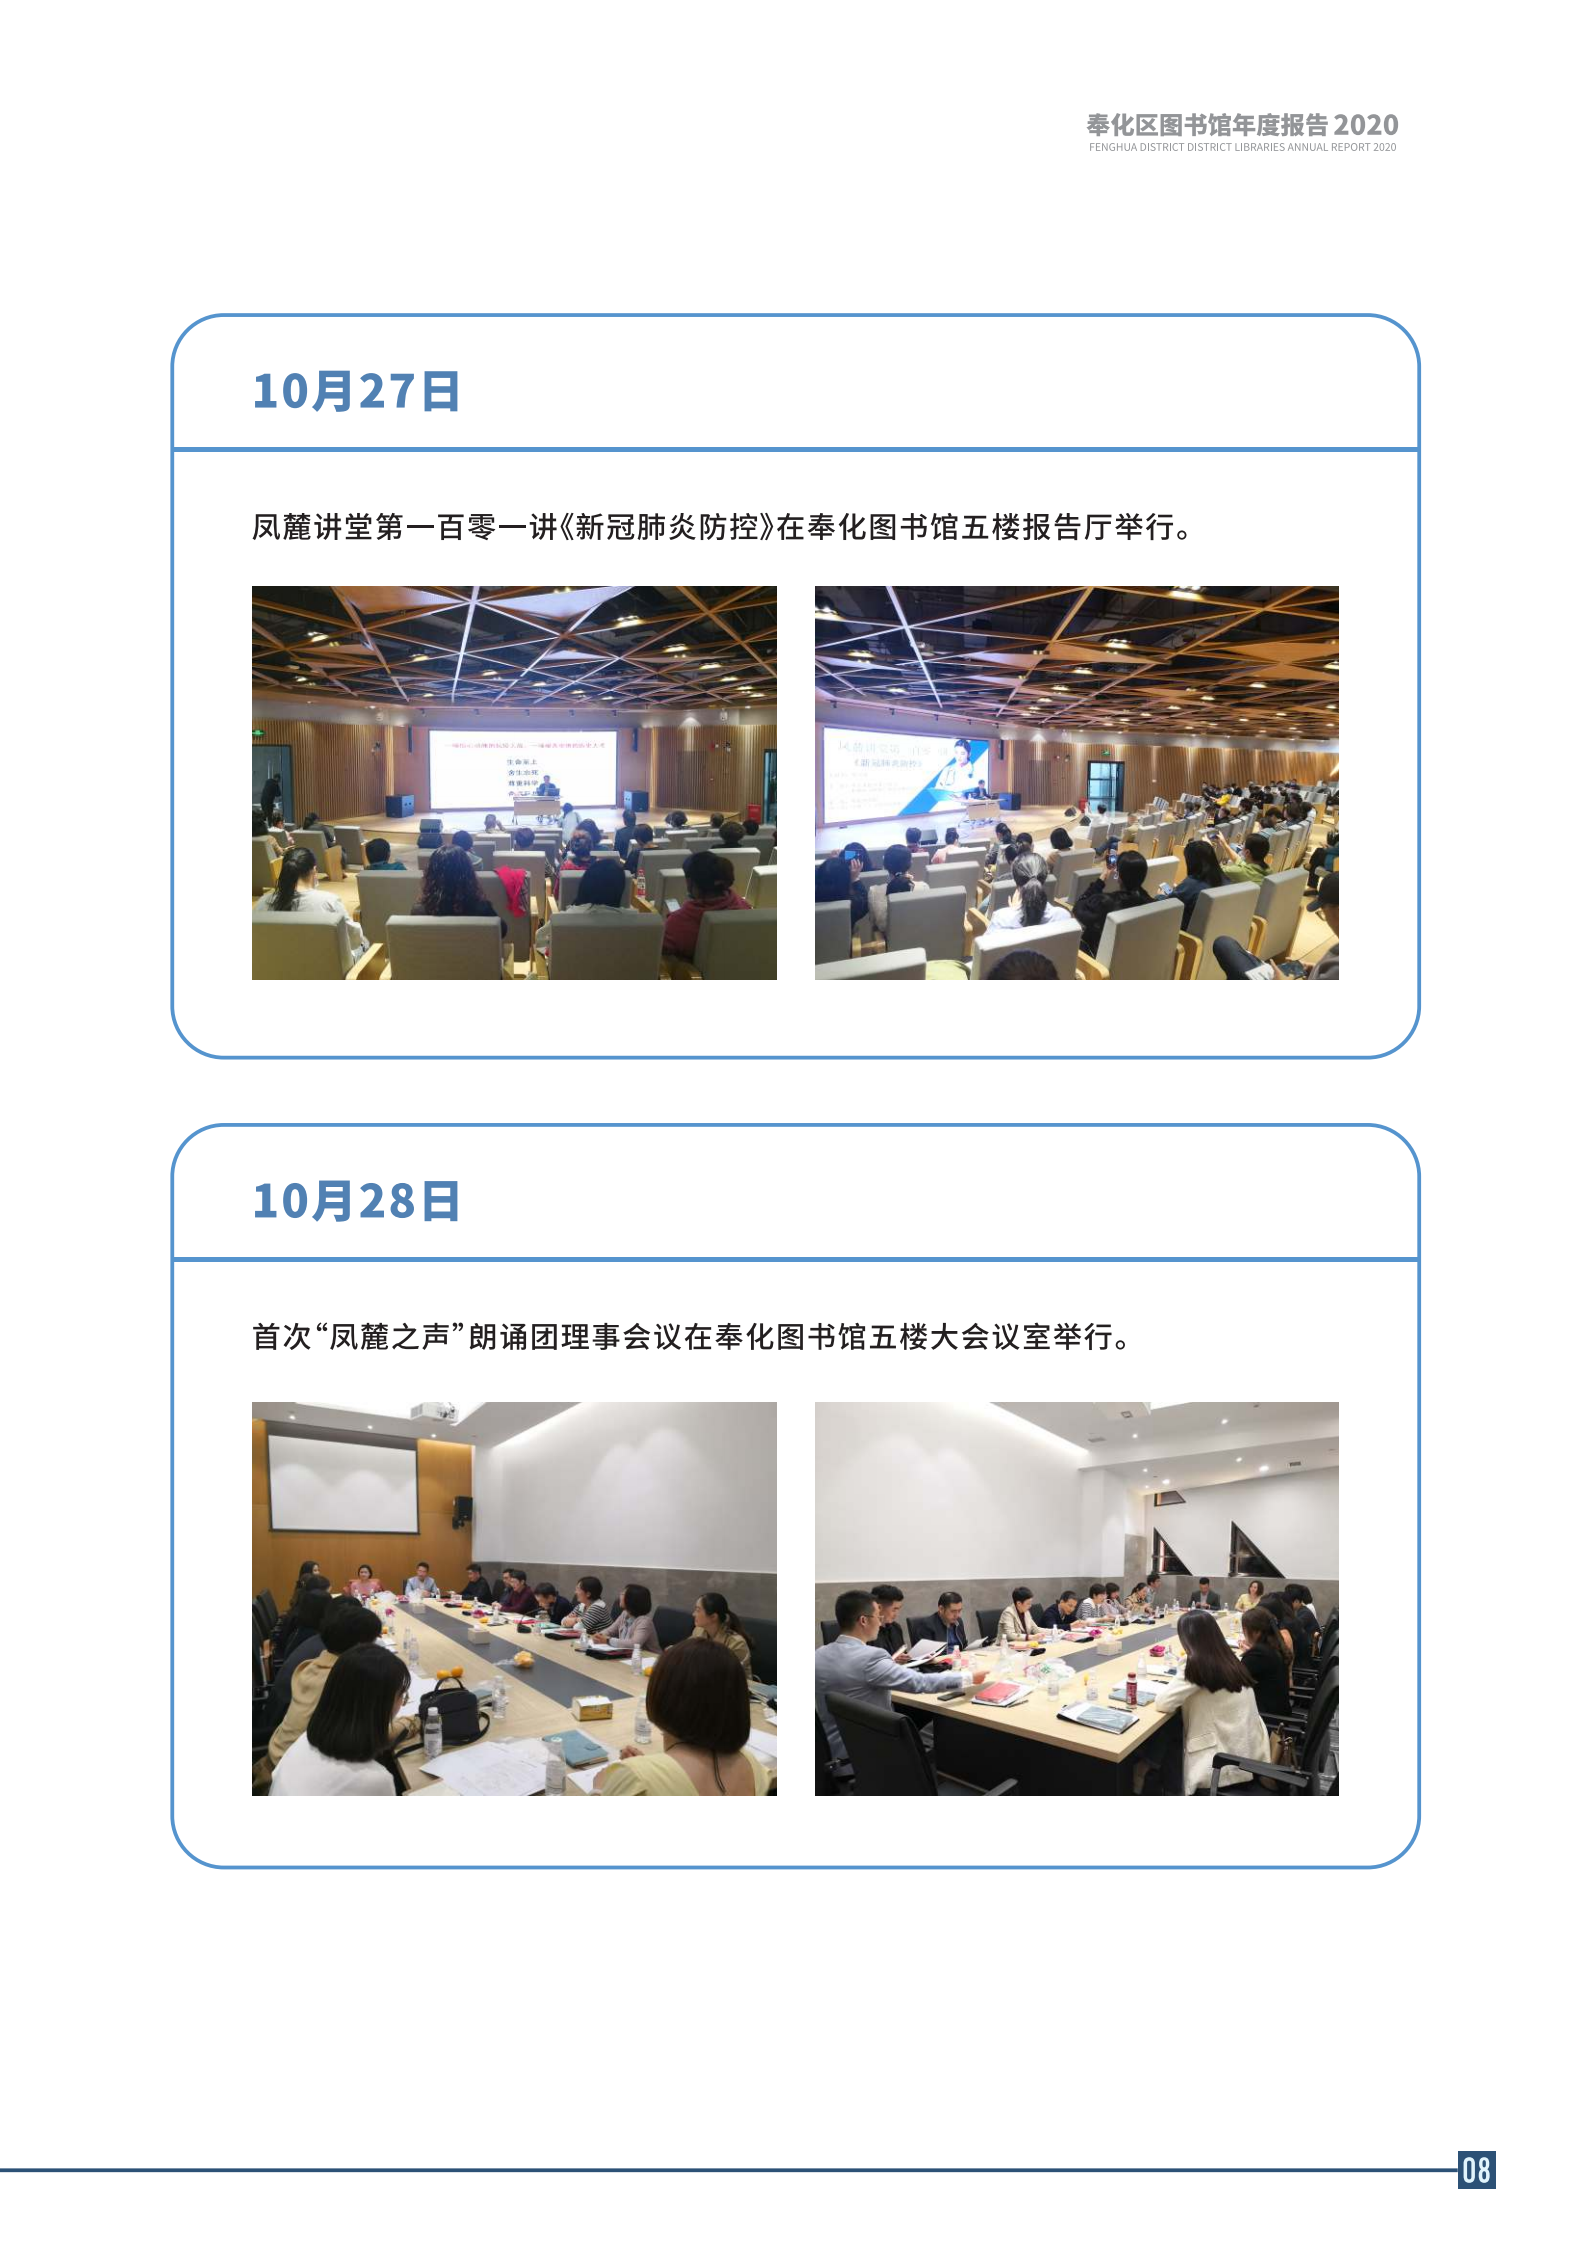 宁波市奉化区图书馆2020年年度报告 终稿_08.png